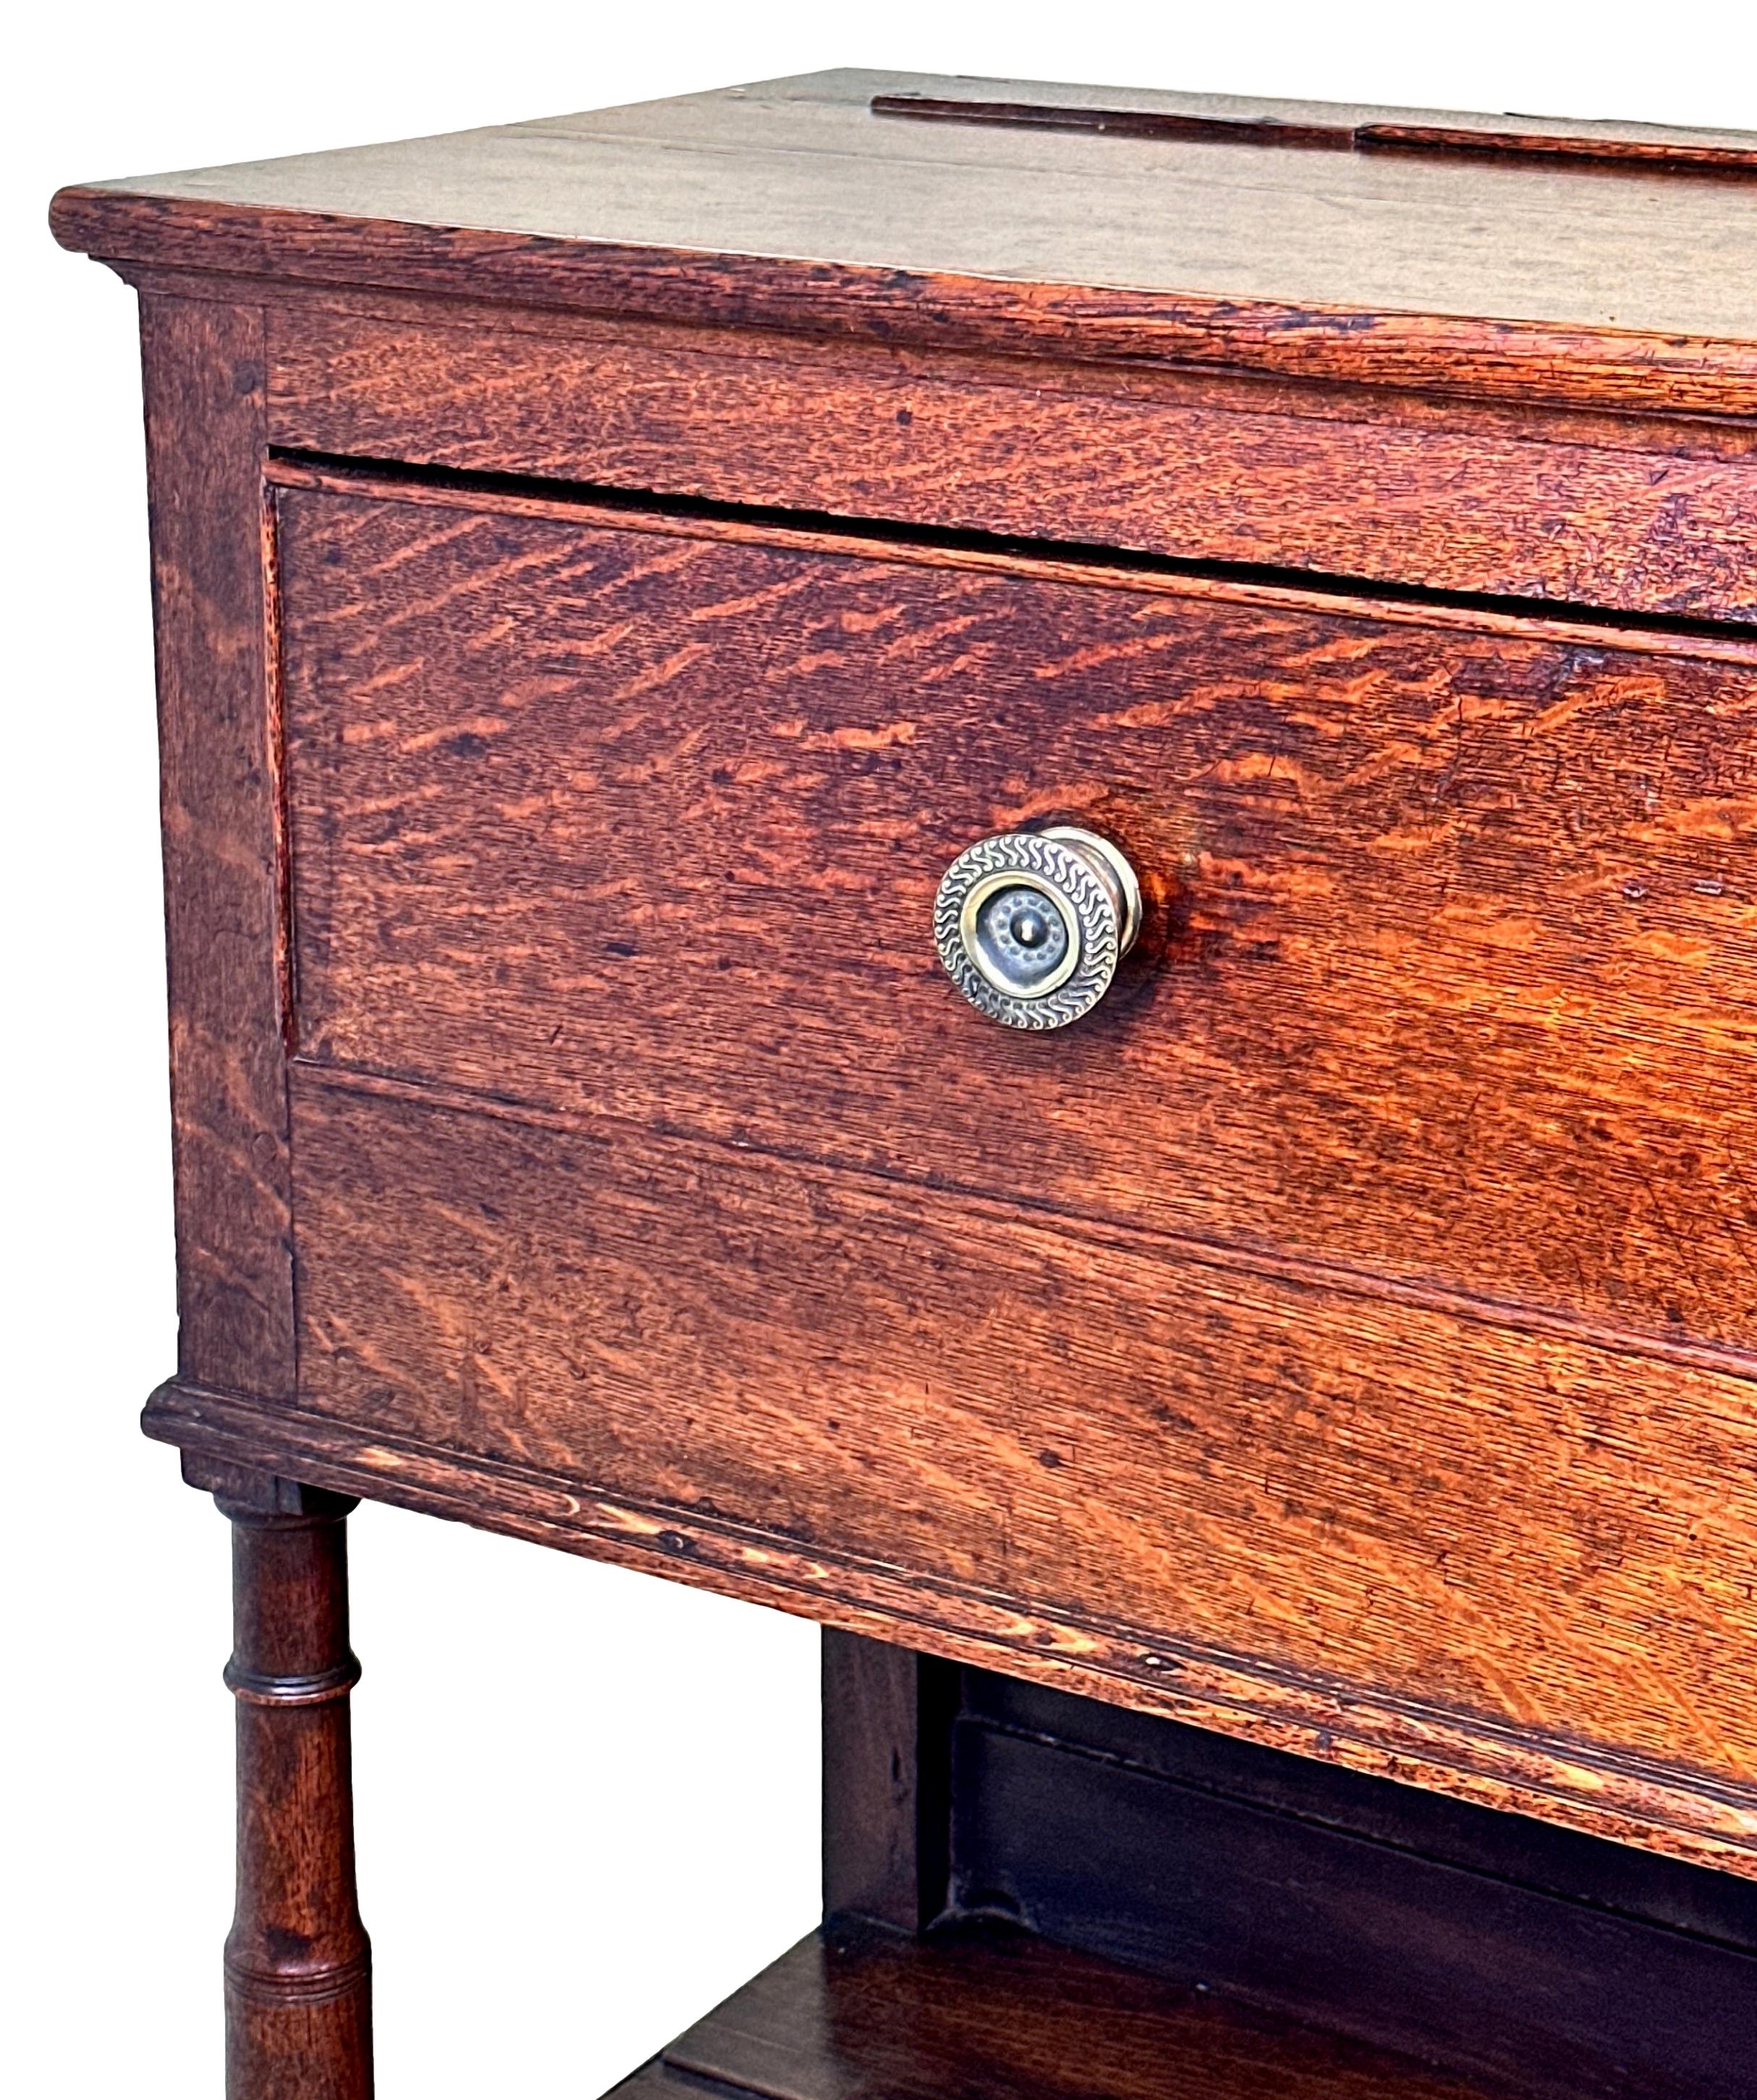 Une base de commode en chêne de la fin du XVIIIe siècle, d'époque George III, attrayante et de très bonne qualité, de bonne couleur et patinée sur toute sa surface, comportant trois tiroirs en frise avec des boutons remplacés, sur d'élégants